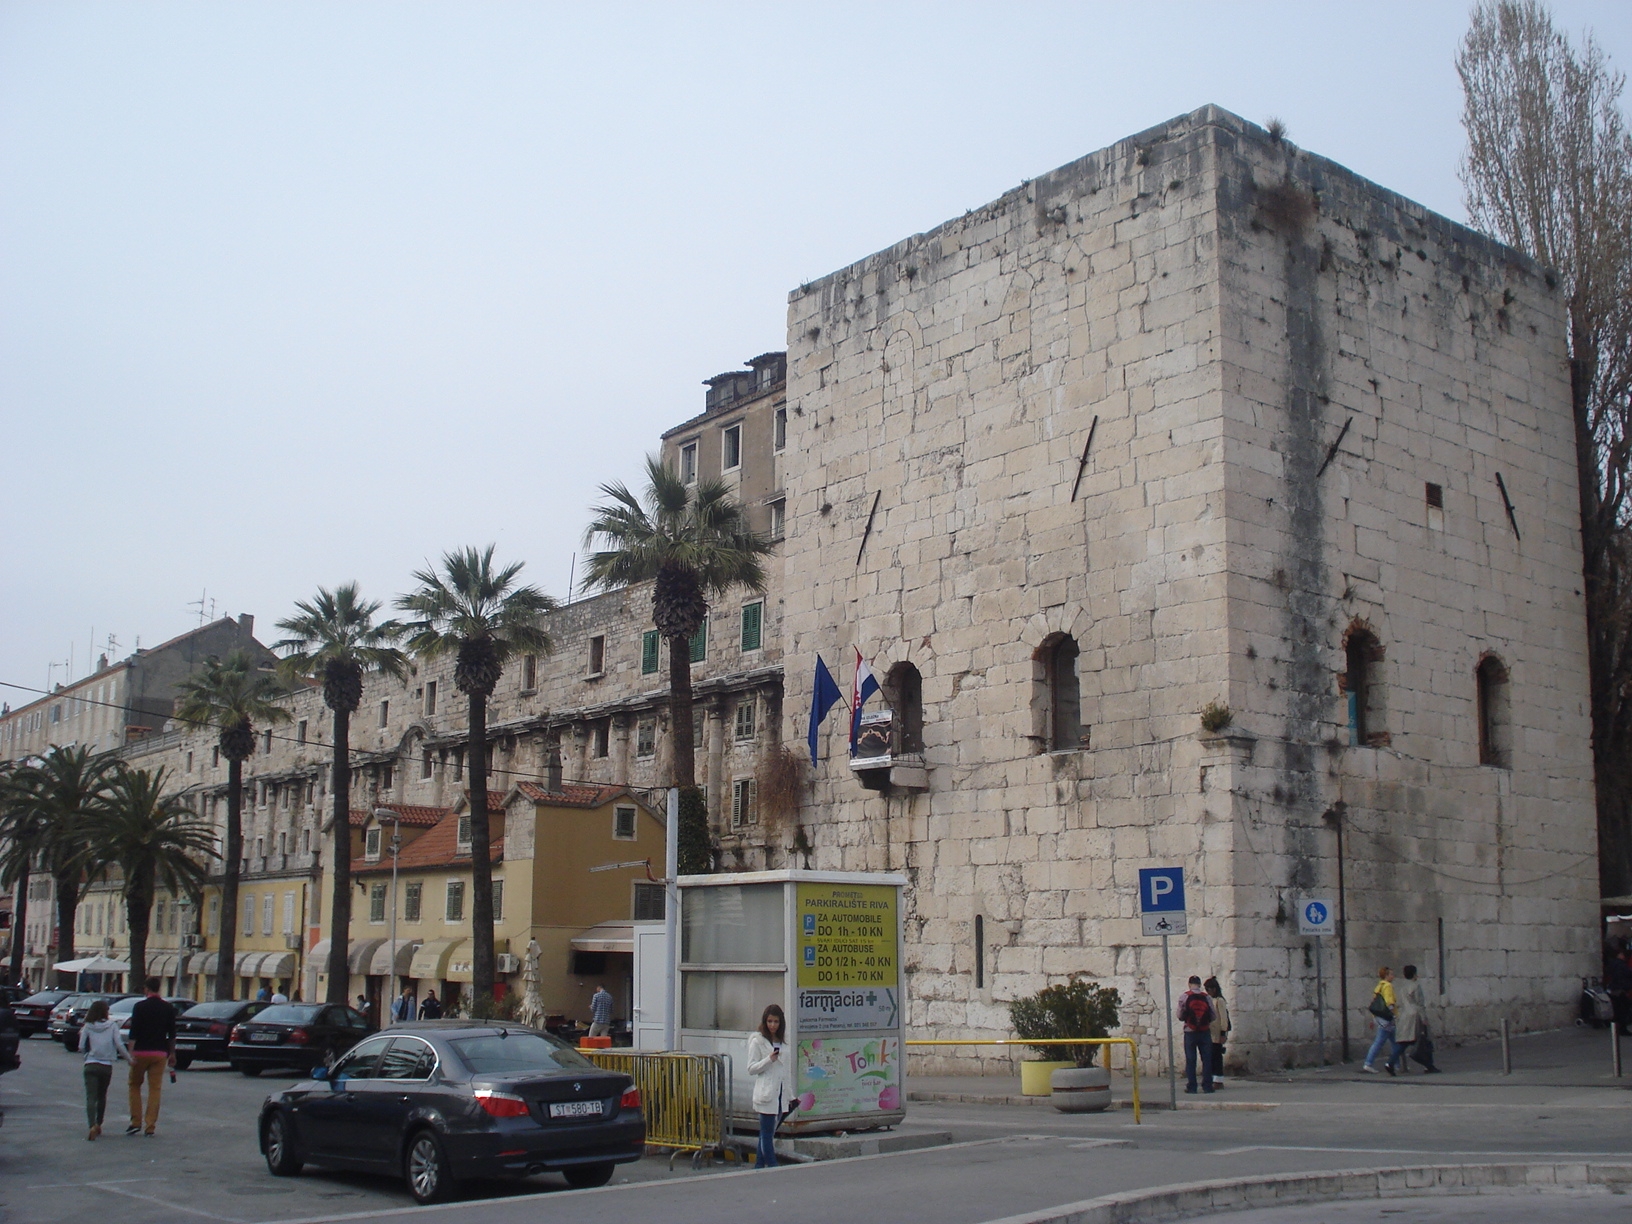 File:Luftbild vom Diokletianpalast in Split, Kroatien (48608754492).jpg -  Wikimedia Commons